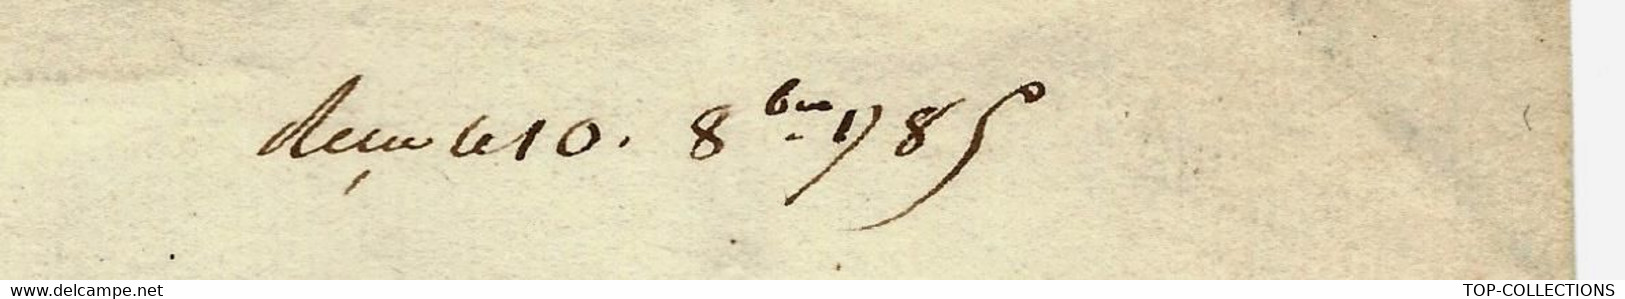 1785 De Cohenhague Danemark COMPAGNIE DANOISE DES INDES COPENHAGUE Lettre Signée Pour FOACHE LE HAVRE - Documents Historiques